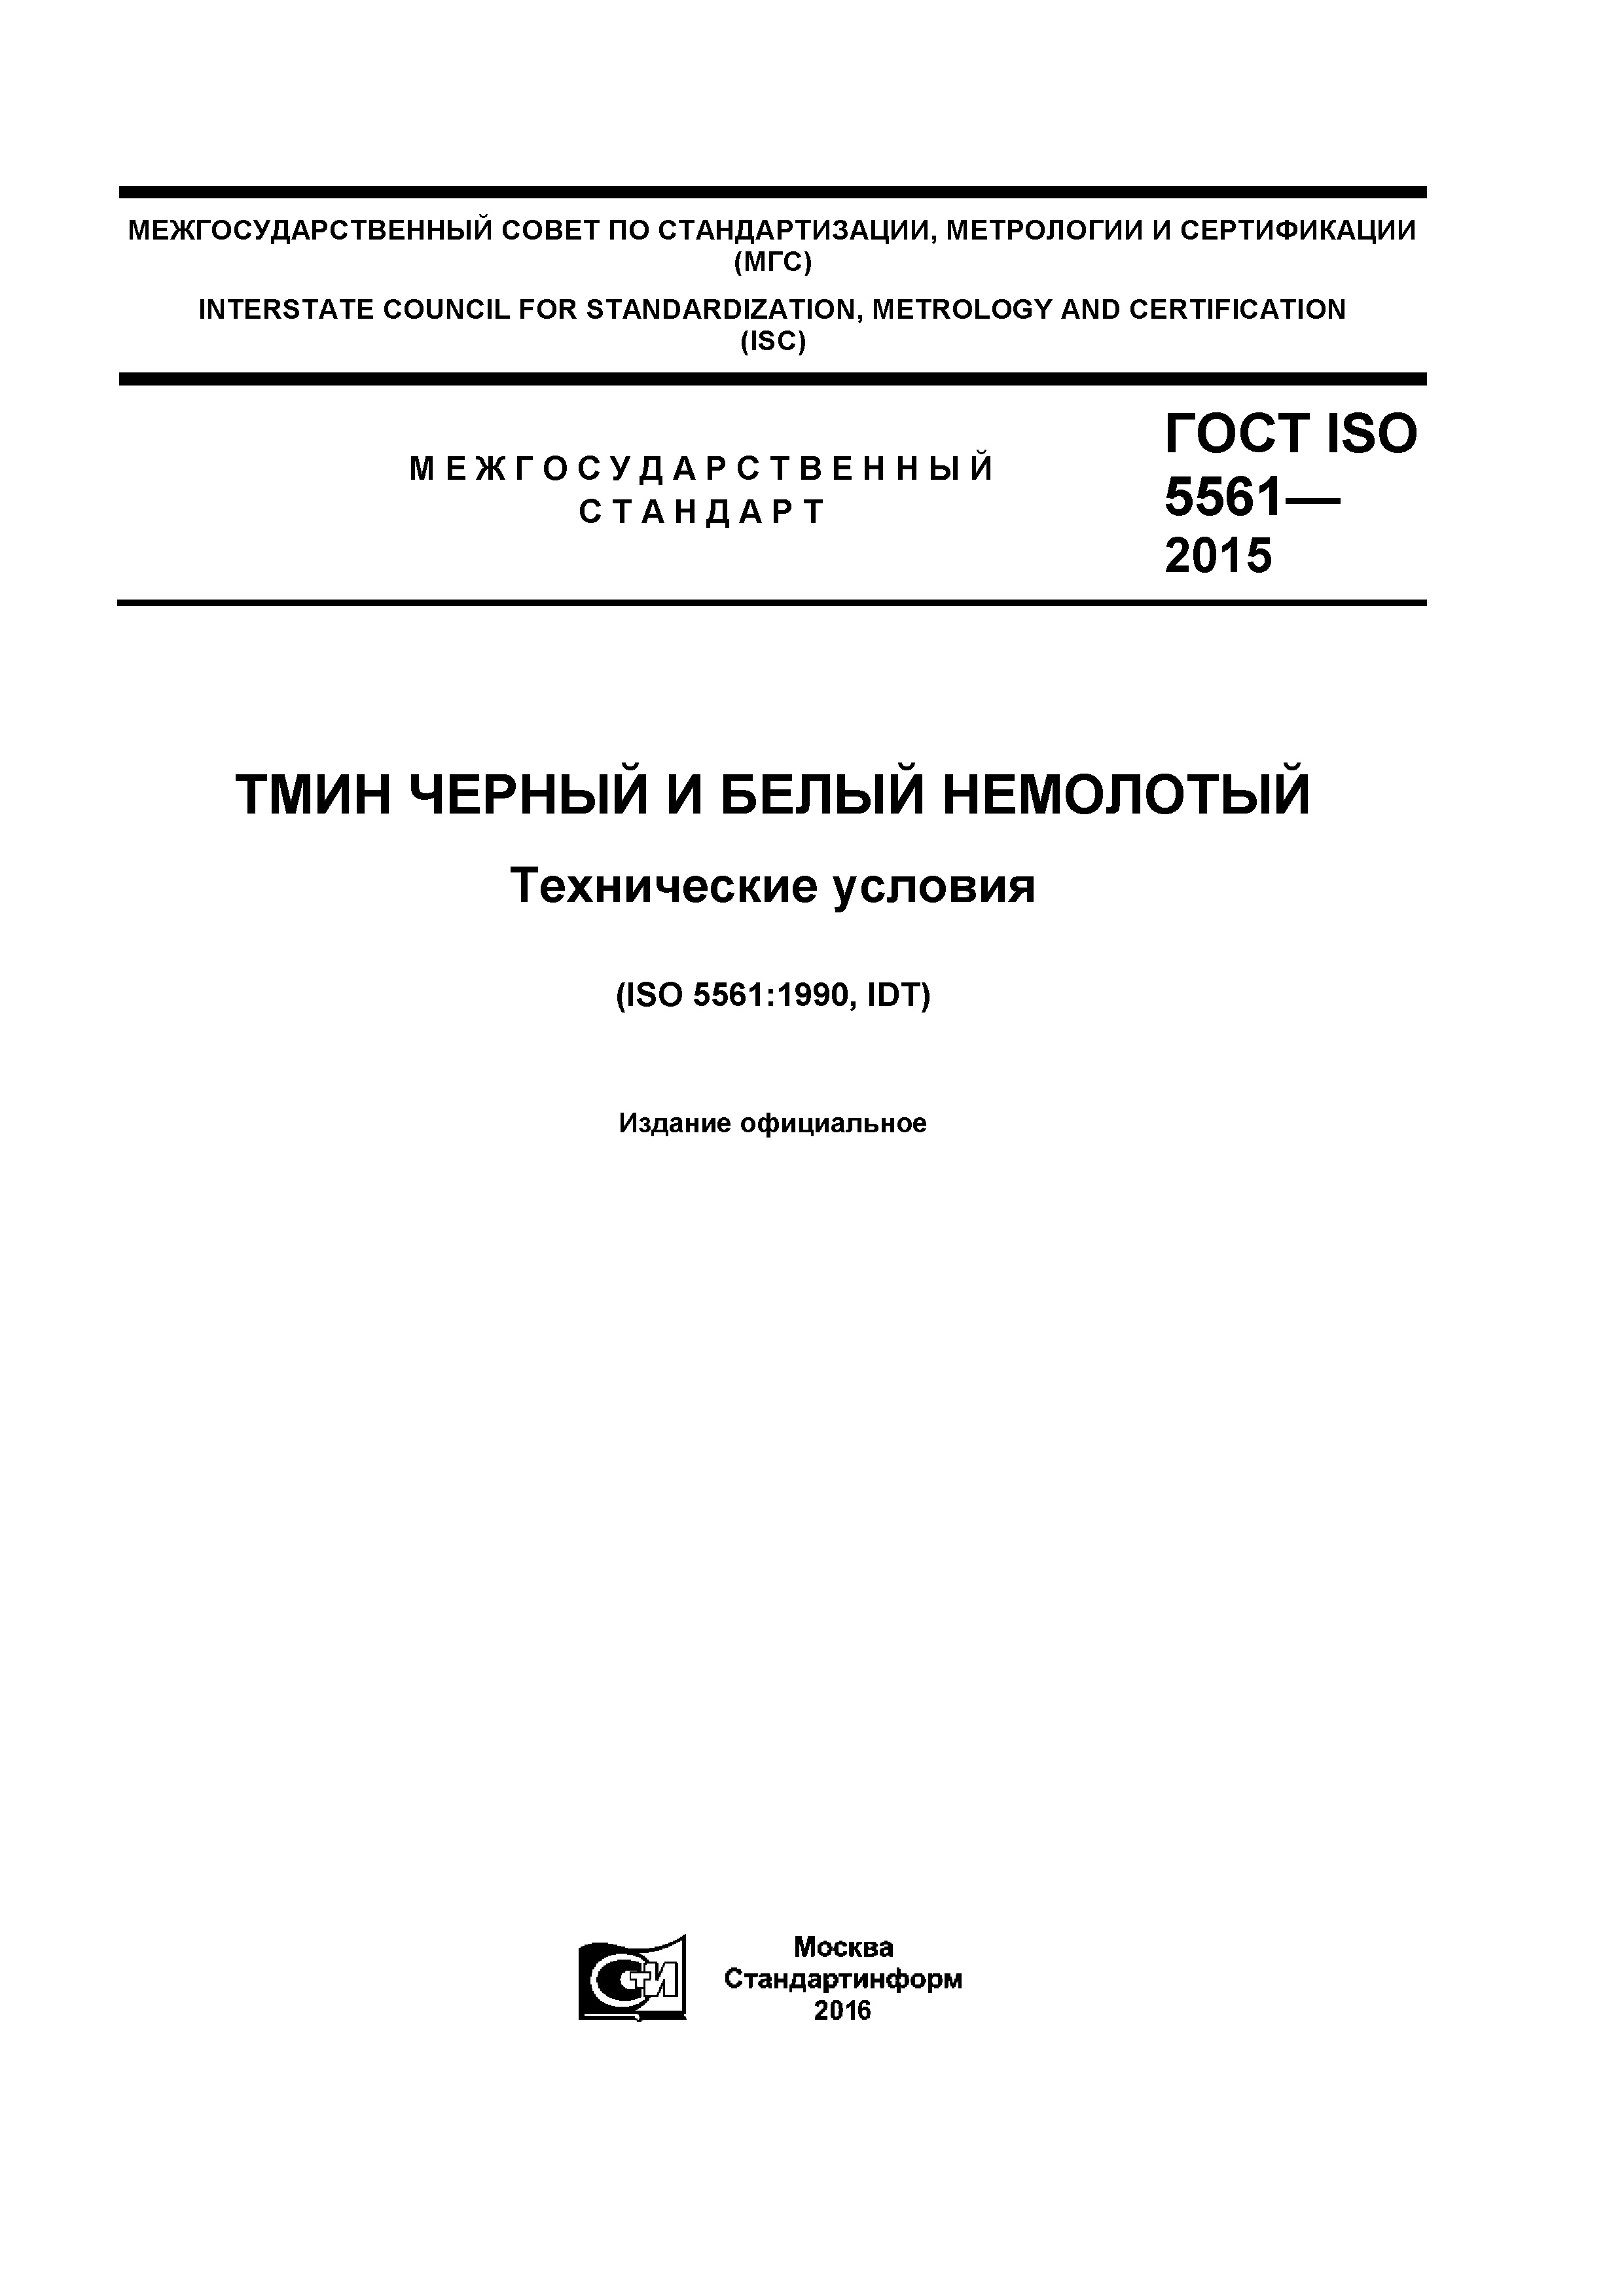 ГОСТ ISO 5561-2015